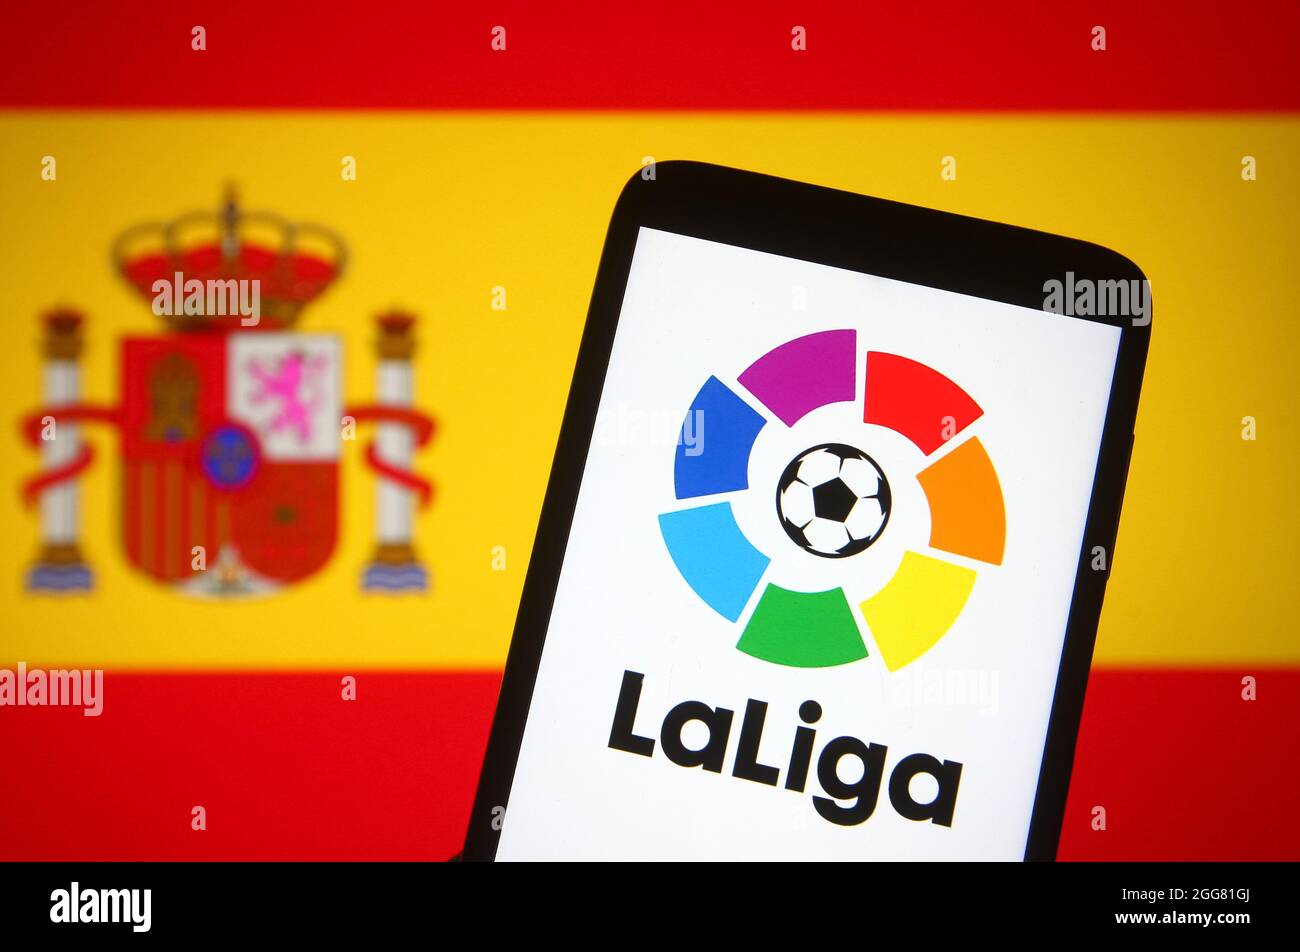 In questa foto, il logo la Liga (Campeonato Nacional de Liga de Primera  Division) di una lega di calcio spagnola è visto sullo schermo di uno  smartphone di fronte alla bandiera spagnola